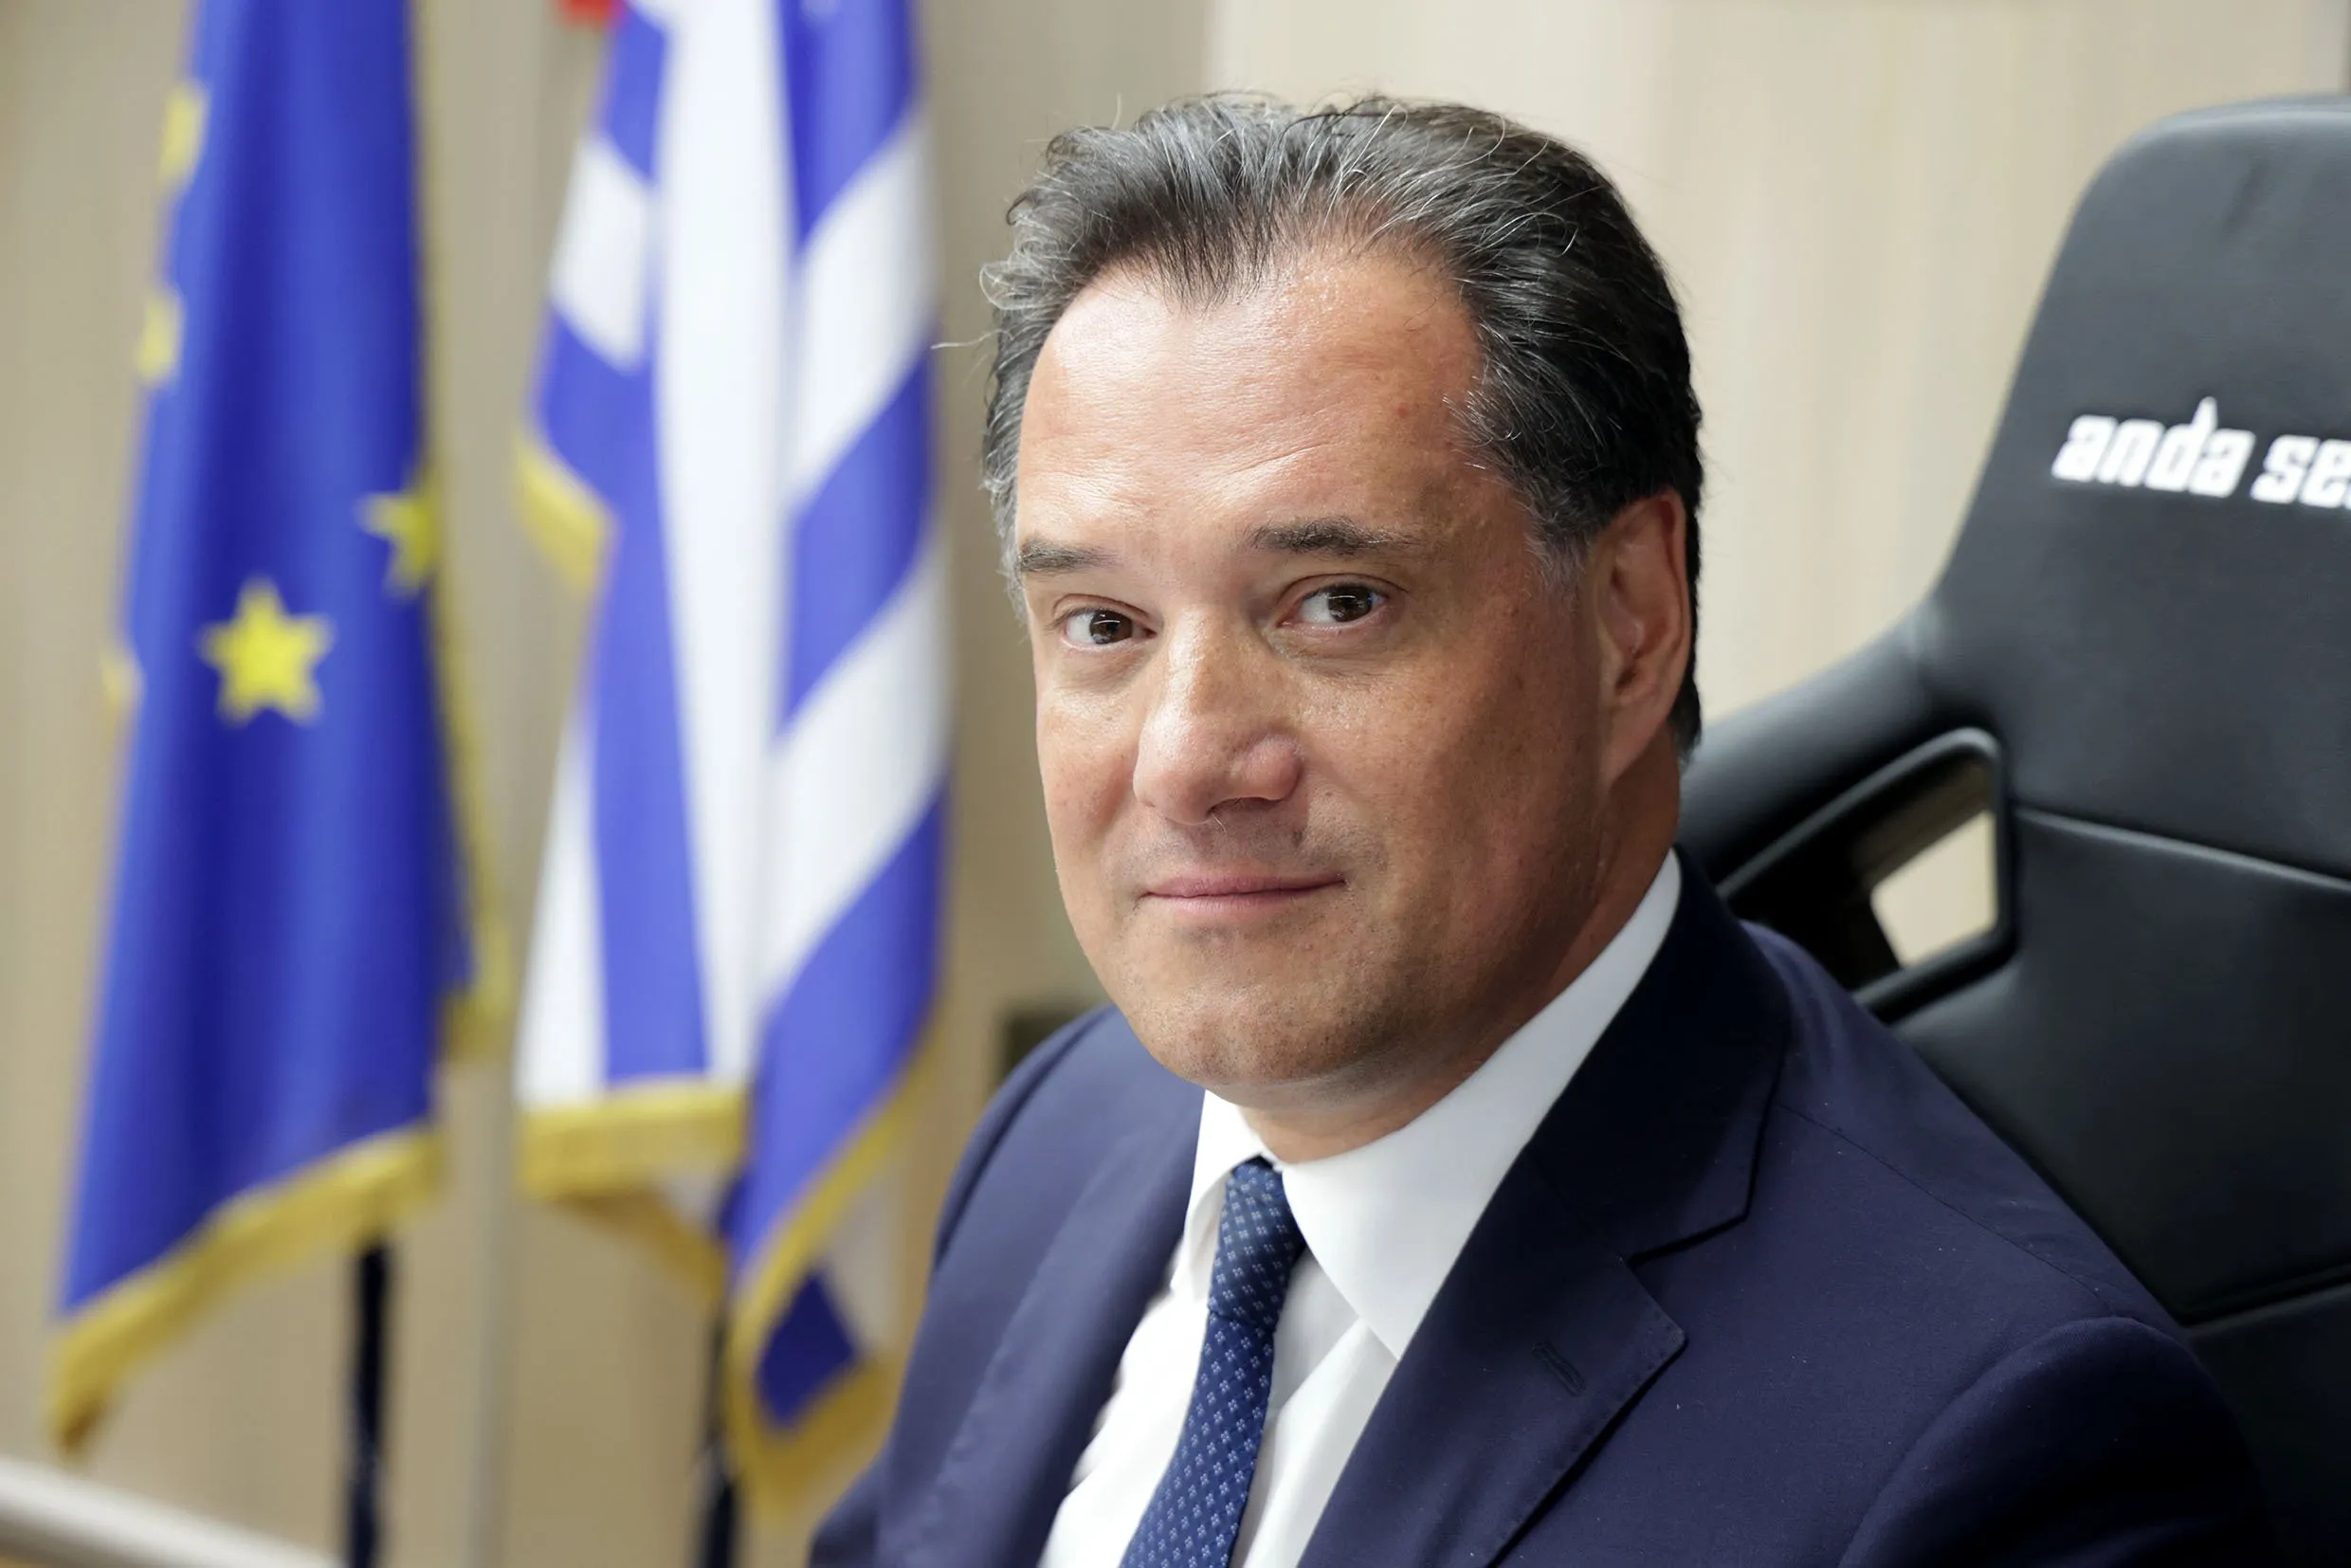 Α.Γεωργιάδης: «Ο Σπύρος Καρανικόλας μπήκε στο ευρωψηφοδέλτιο επειδή έβαλε πλάτη για την Novartis»! (βίντεο)